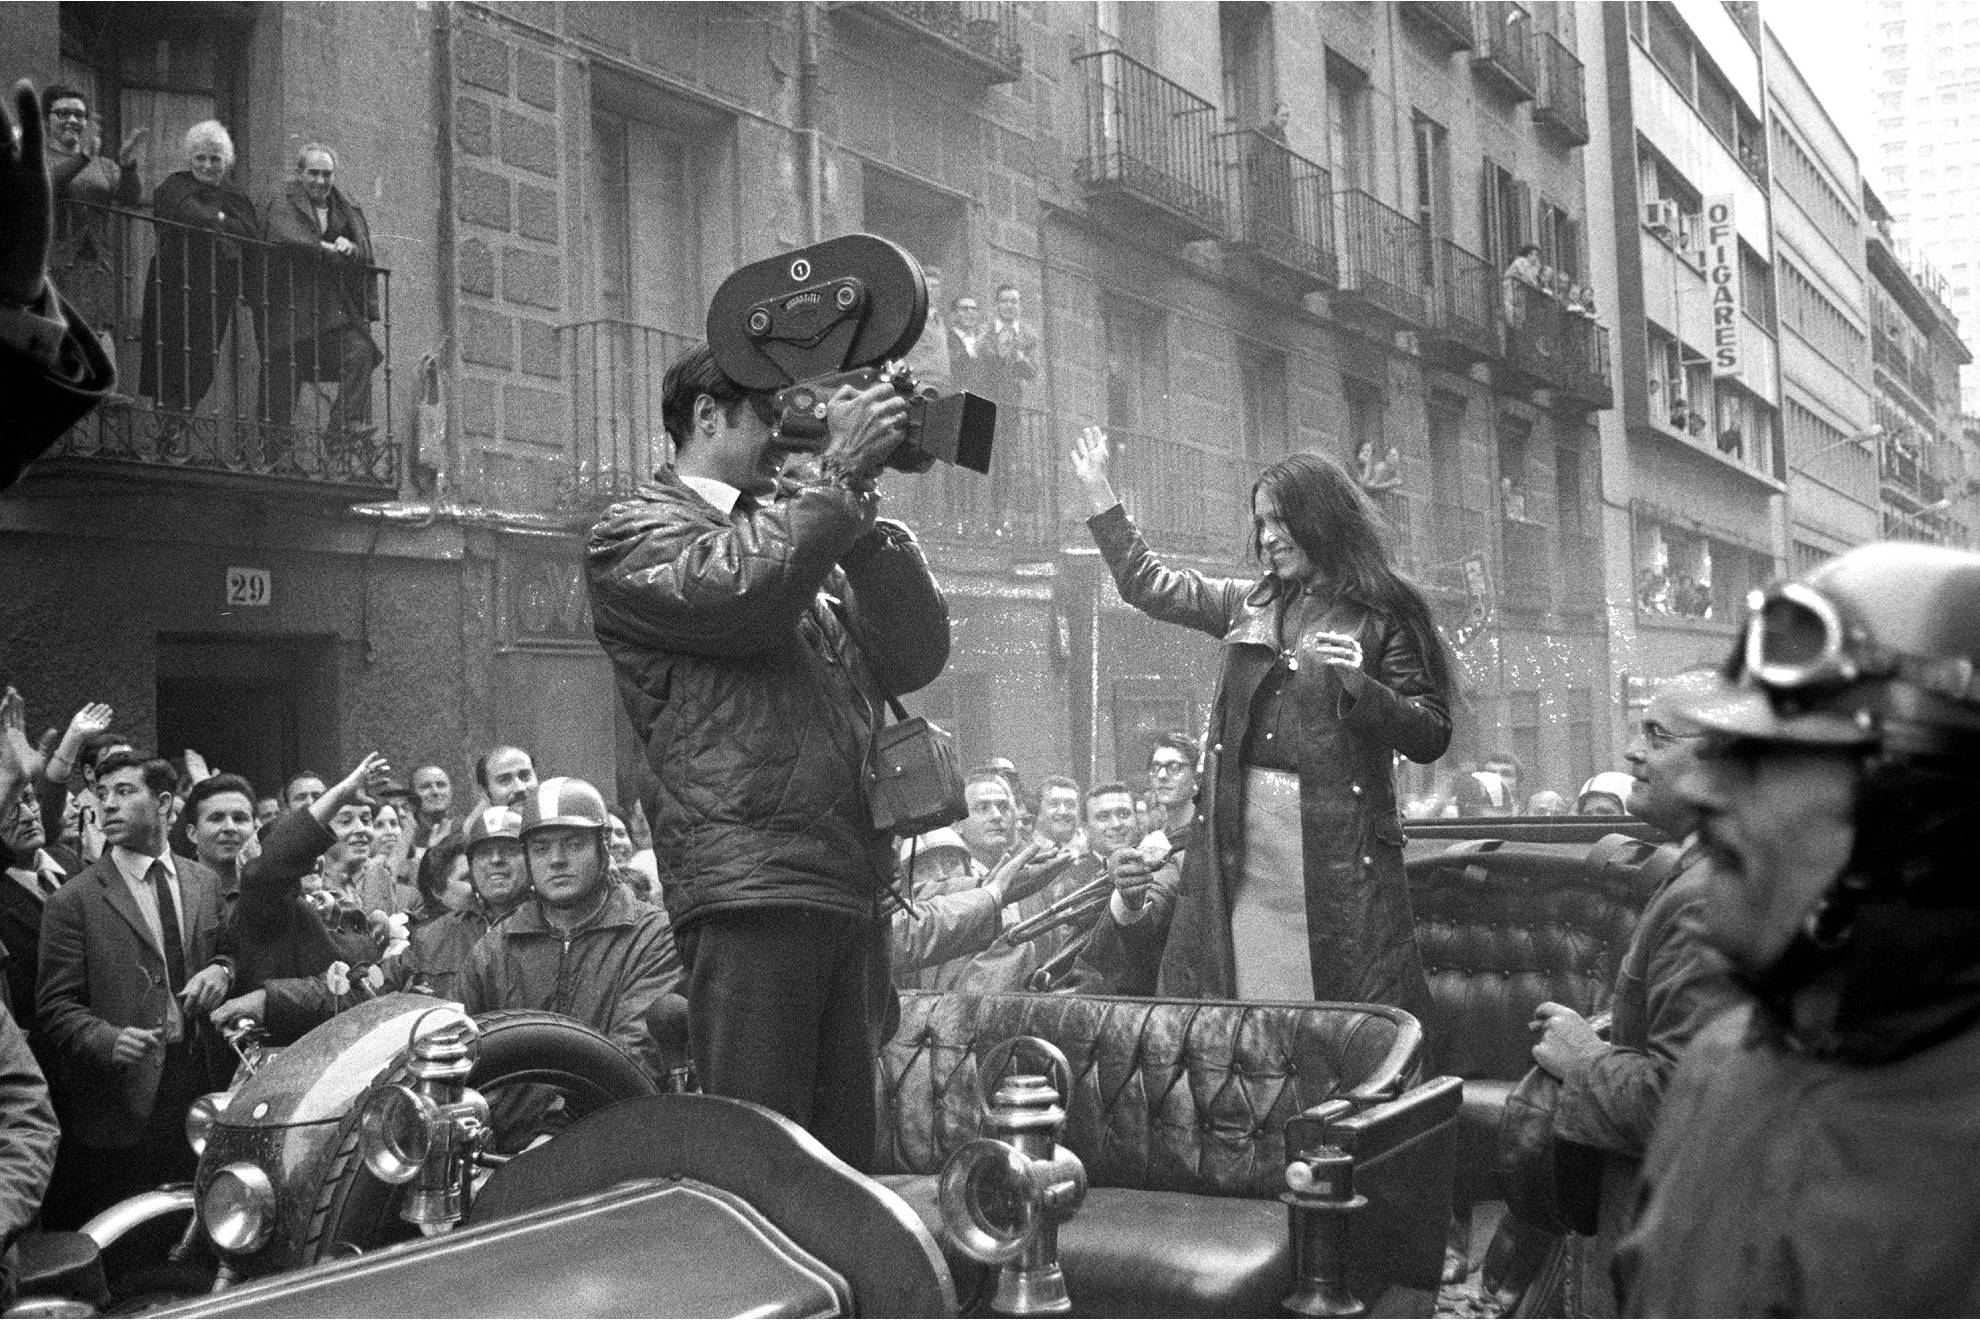 Massiel saluda desde un coche descubierto a los fans tras ganar el Festival de Eurovisión en 1968.